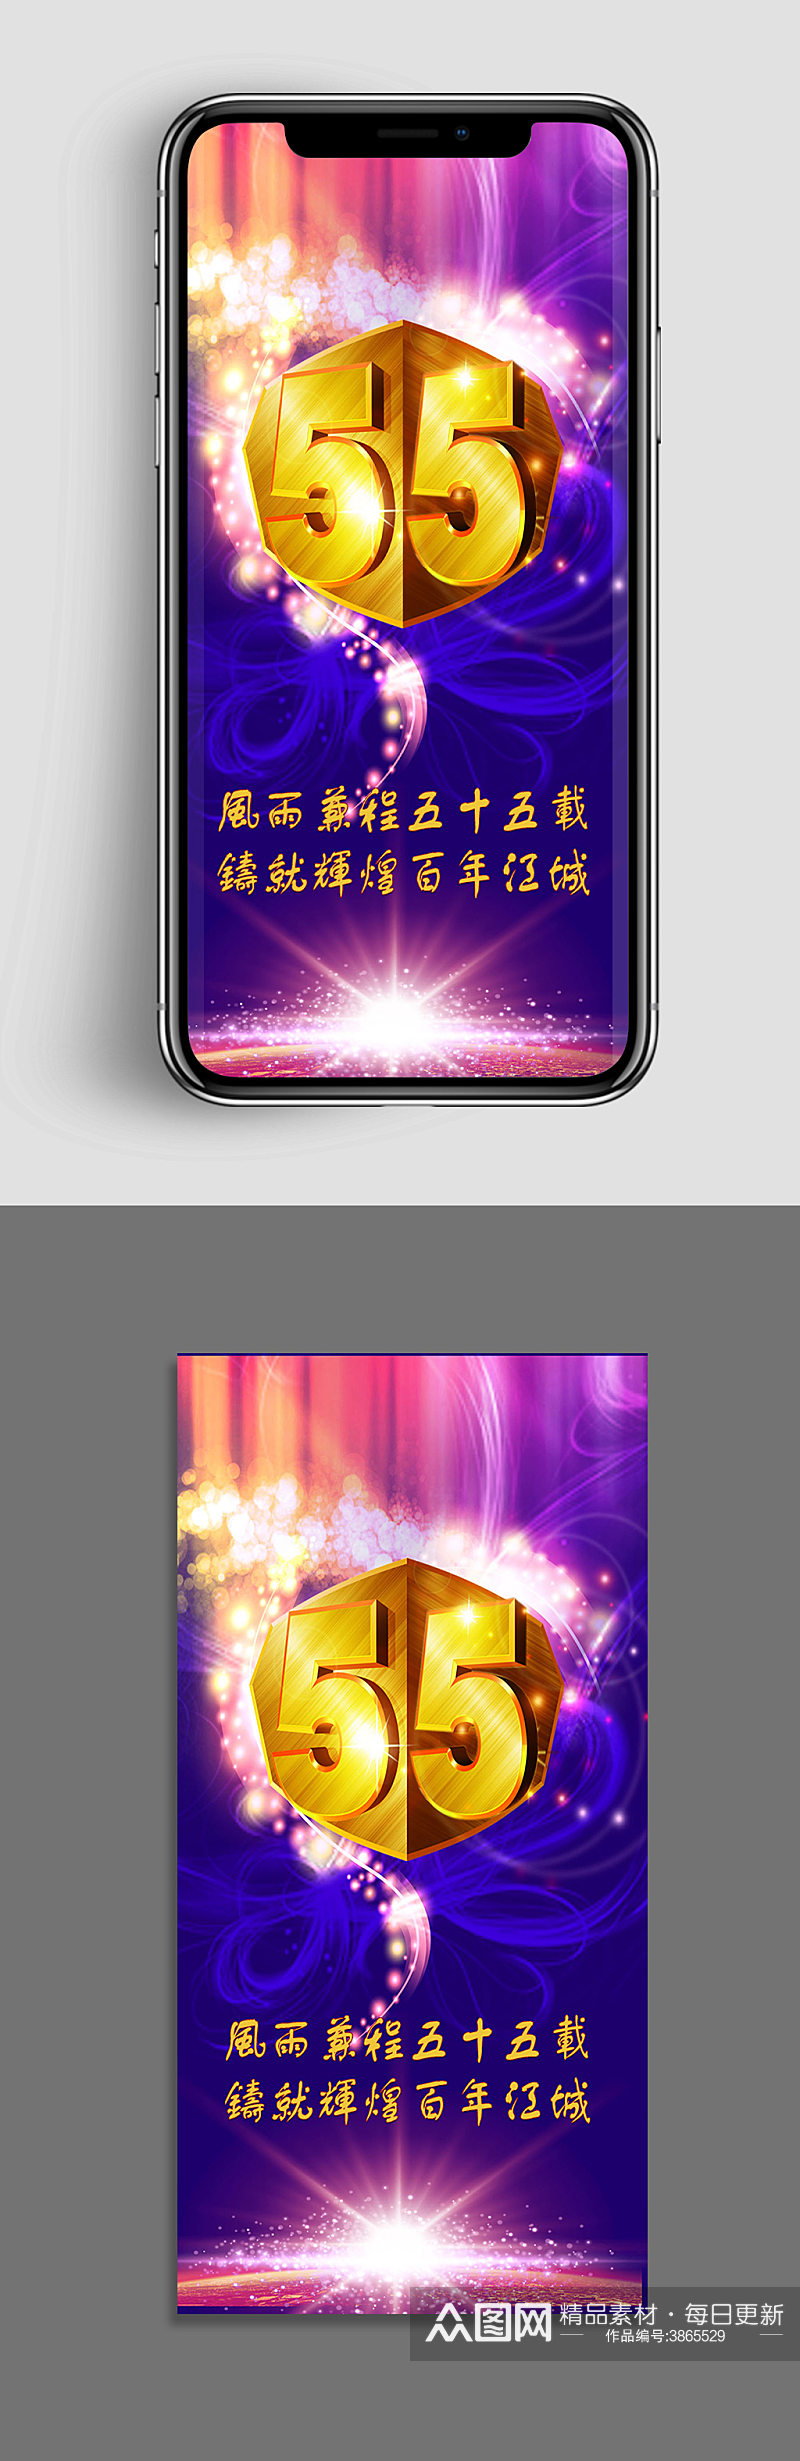 六十五周年庆典紫色手机app海报素材